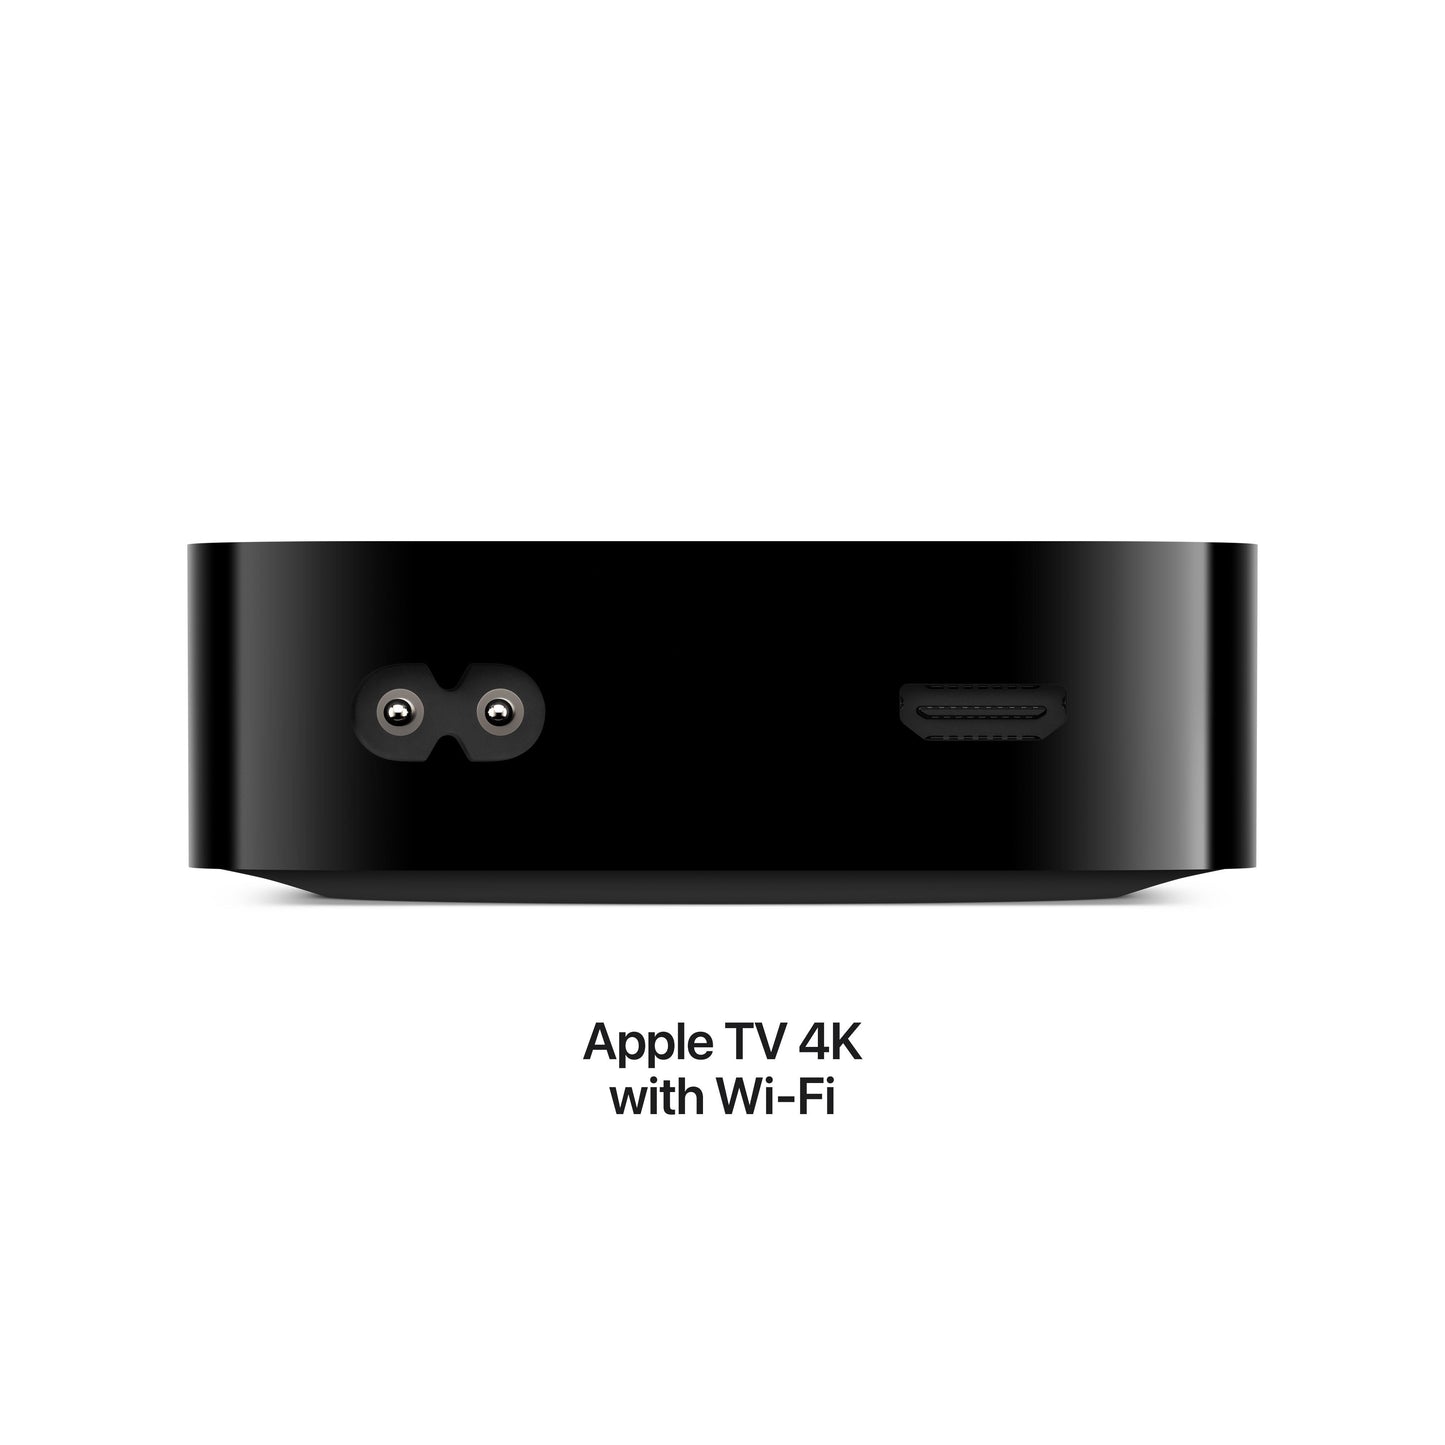 تلفزيون Apple TV 4K مع Wi-Fi + Ethernet